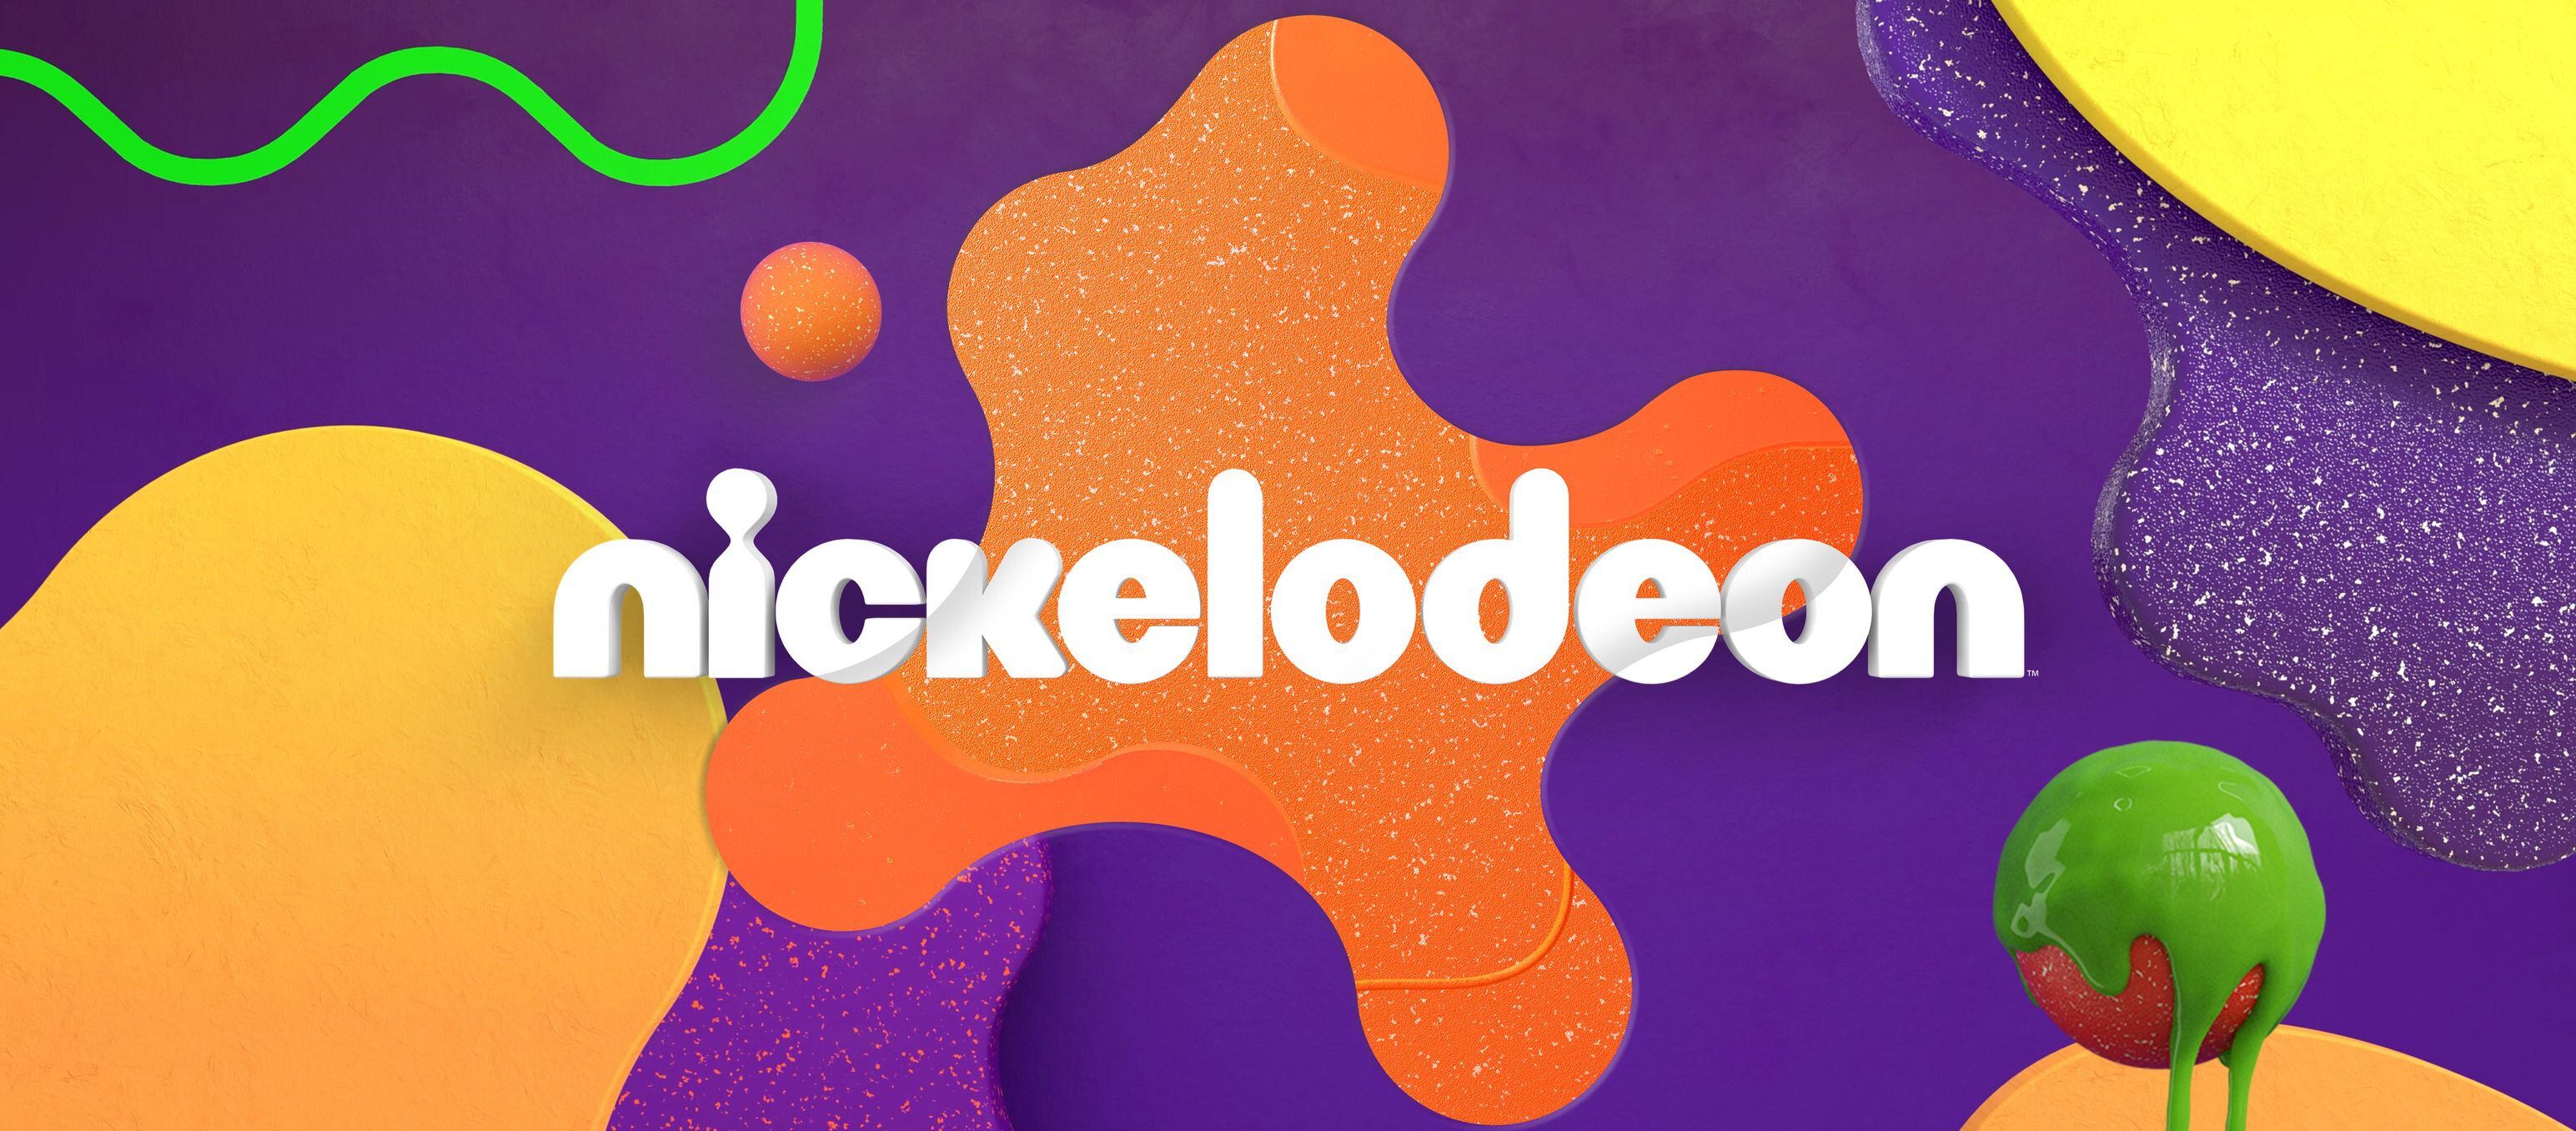 Nickelodeon es una cadena de televisión que produce programas para menores de edad. (Foto: Facebook / @Nickelodeon)